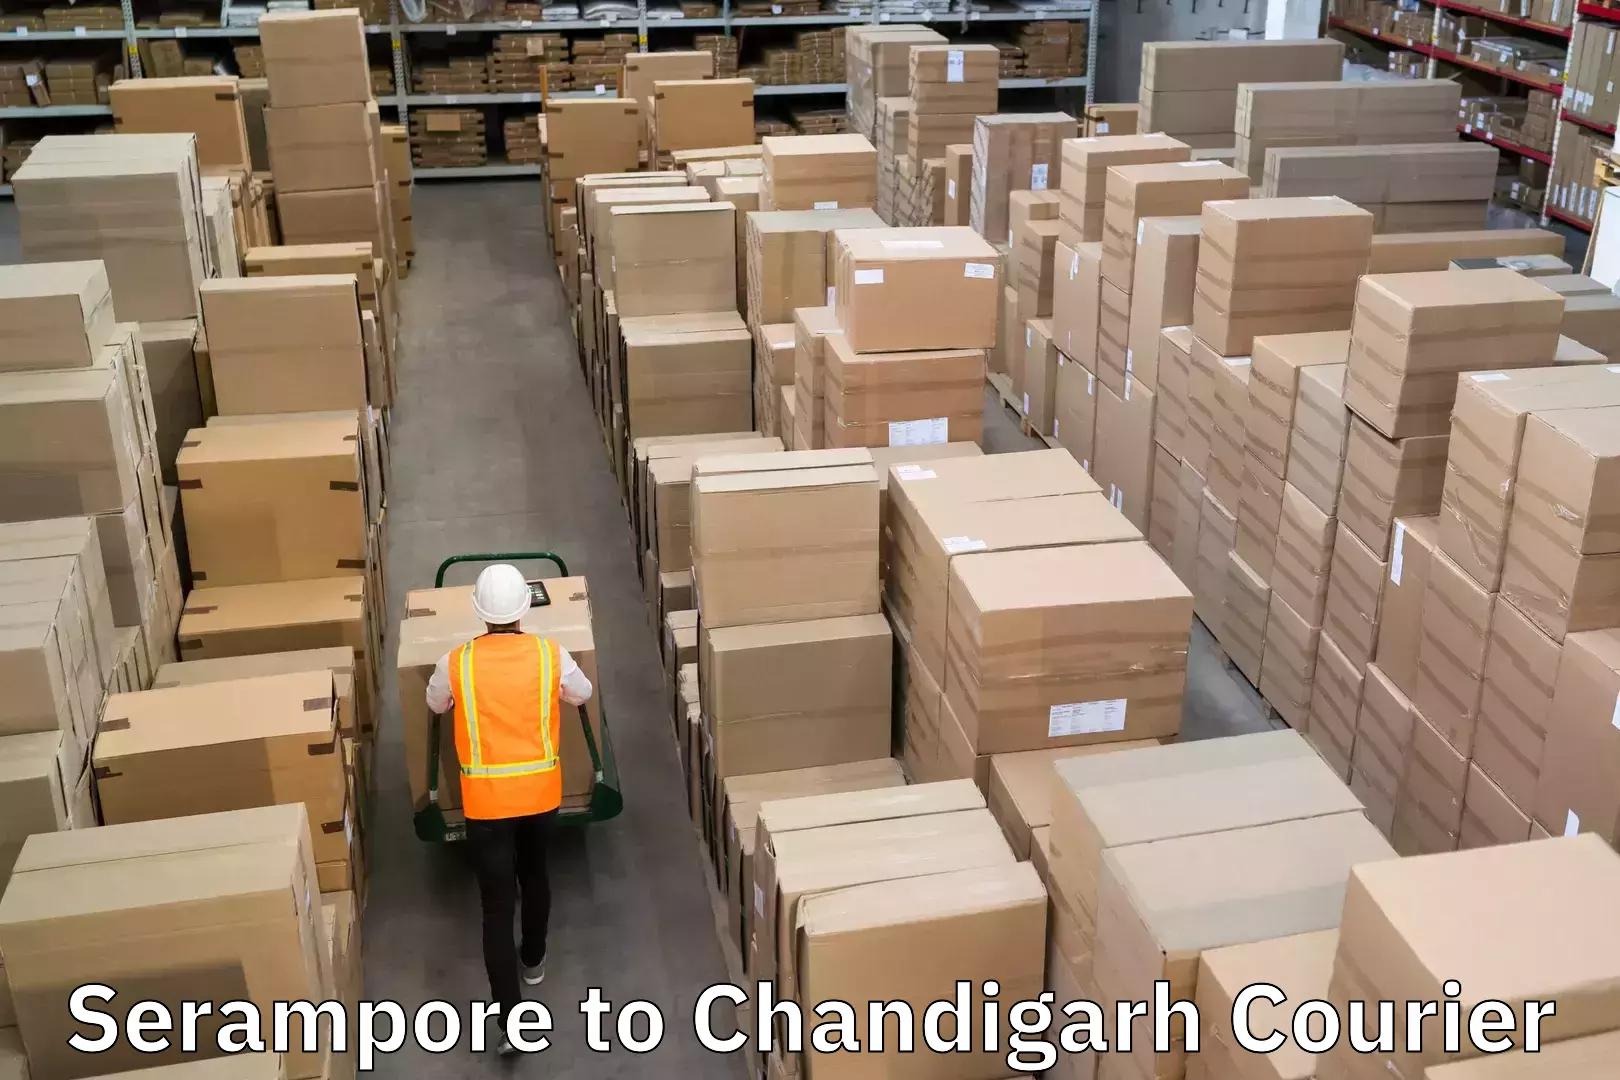 Modern courier technology Serampore to Chandigarh